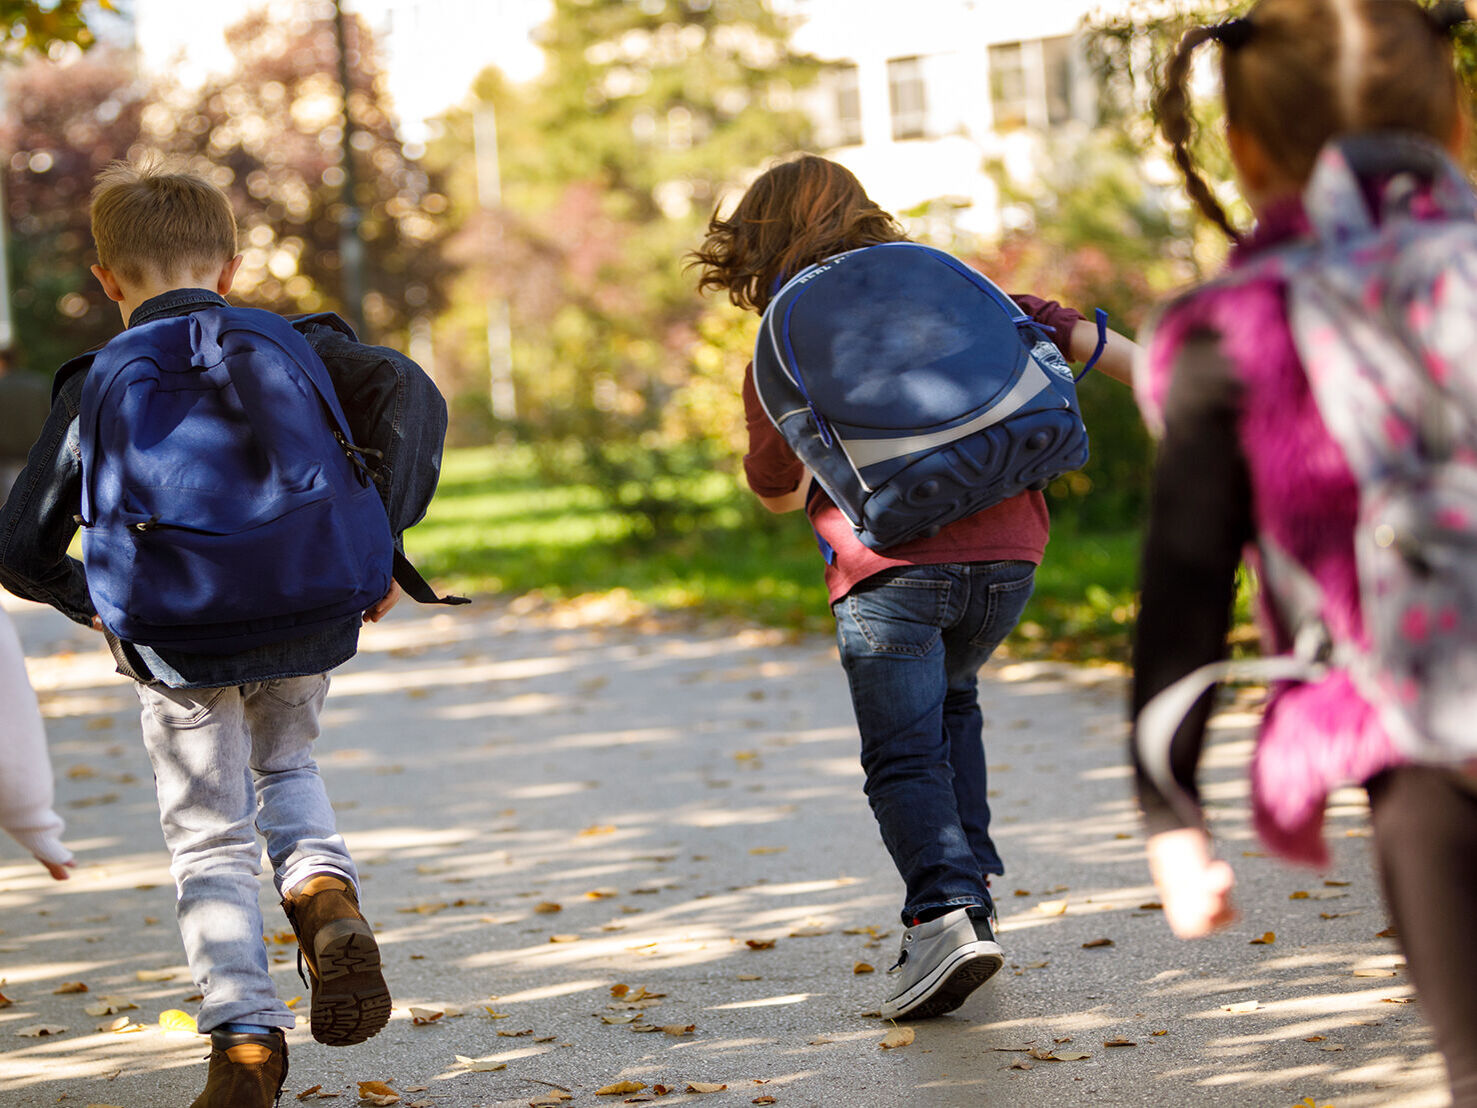 Schulanfang: Welche Absicherung brauchen meine Kinder für den neuen Schulweg?